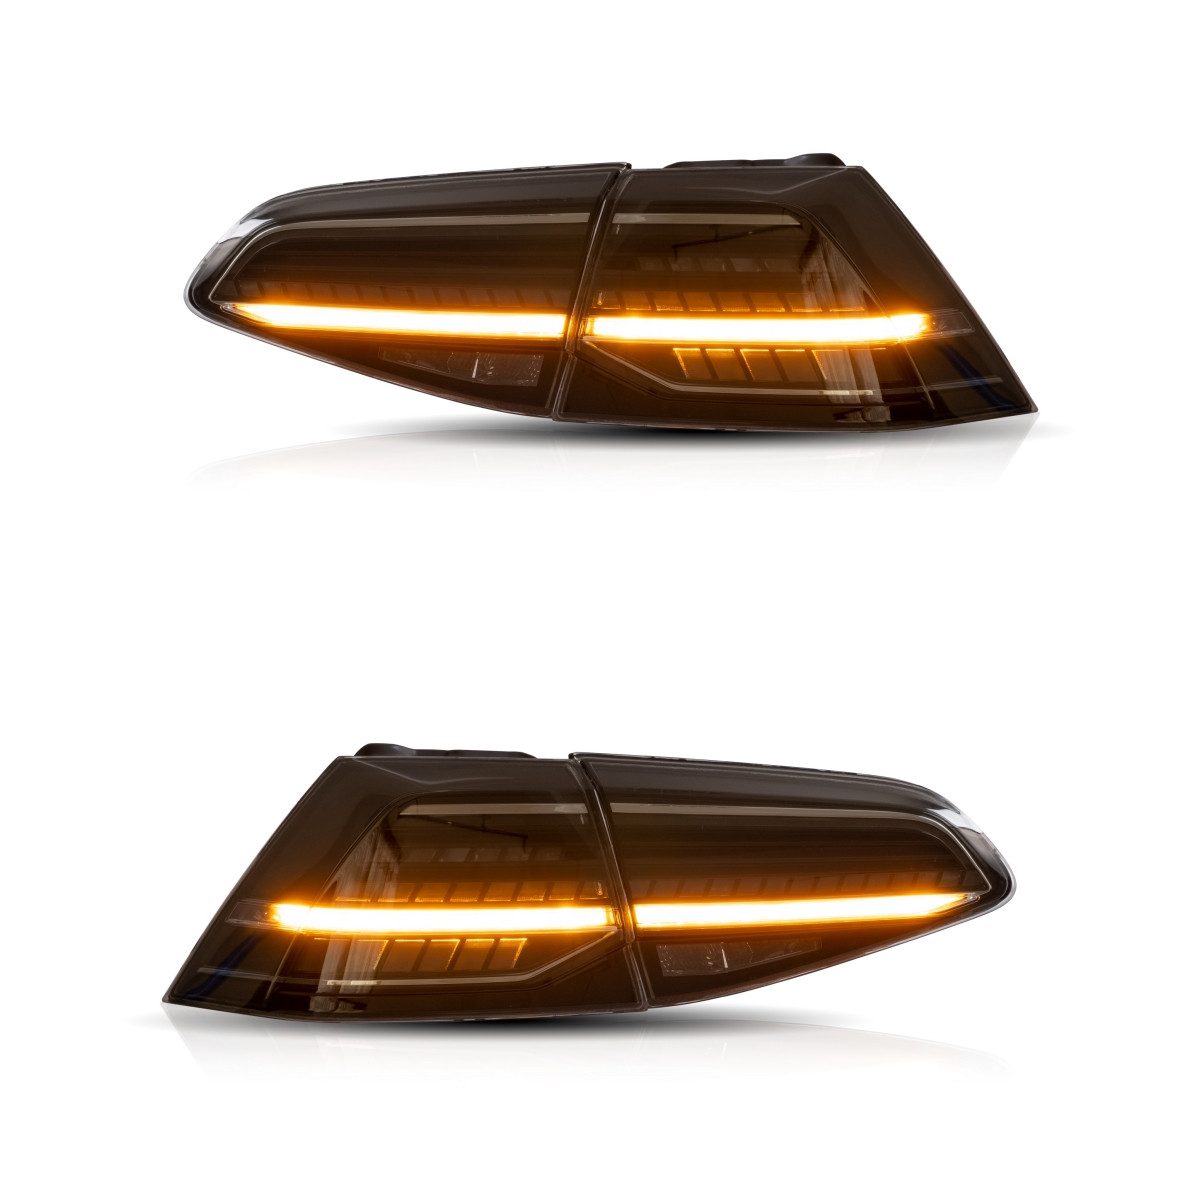 LLCTOOLS Rückleuchte Hell ausleuchtende LED Rückleuchte mit E-Prüfzeichen für VW Golf 7, Rücklicht, Bremslicht, Nebelschlussleuchte, Blinklicht und Rückfahrlicht, LED fest integriert, Voll LED, Dynamischer Blinker, Hochwertiges LED Rücklicht Auto mit Bremsfunktion